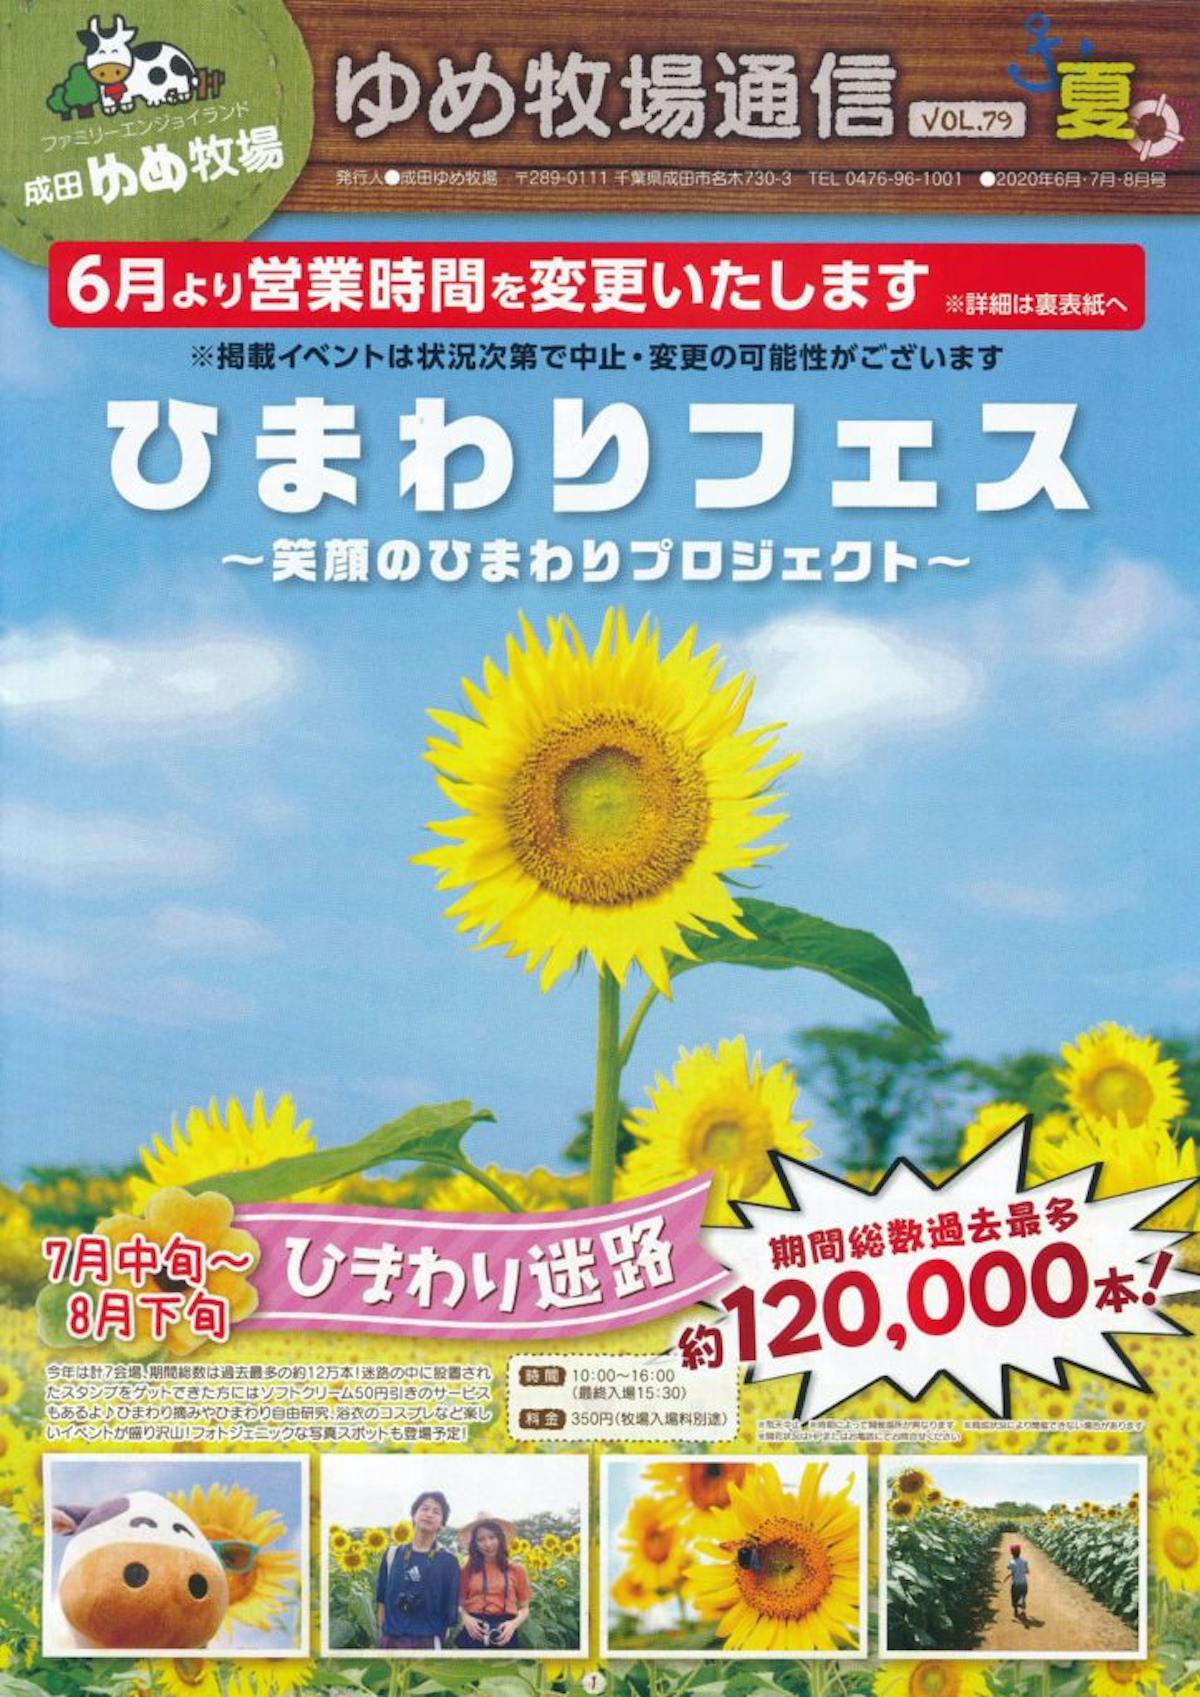 ひまわりフェス 見渡す限り大輪の花が広がる成田ゆめ牧場に溢れる魅力 オマツリジャパン あなたと祭りをつなげるメディア